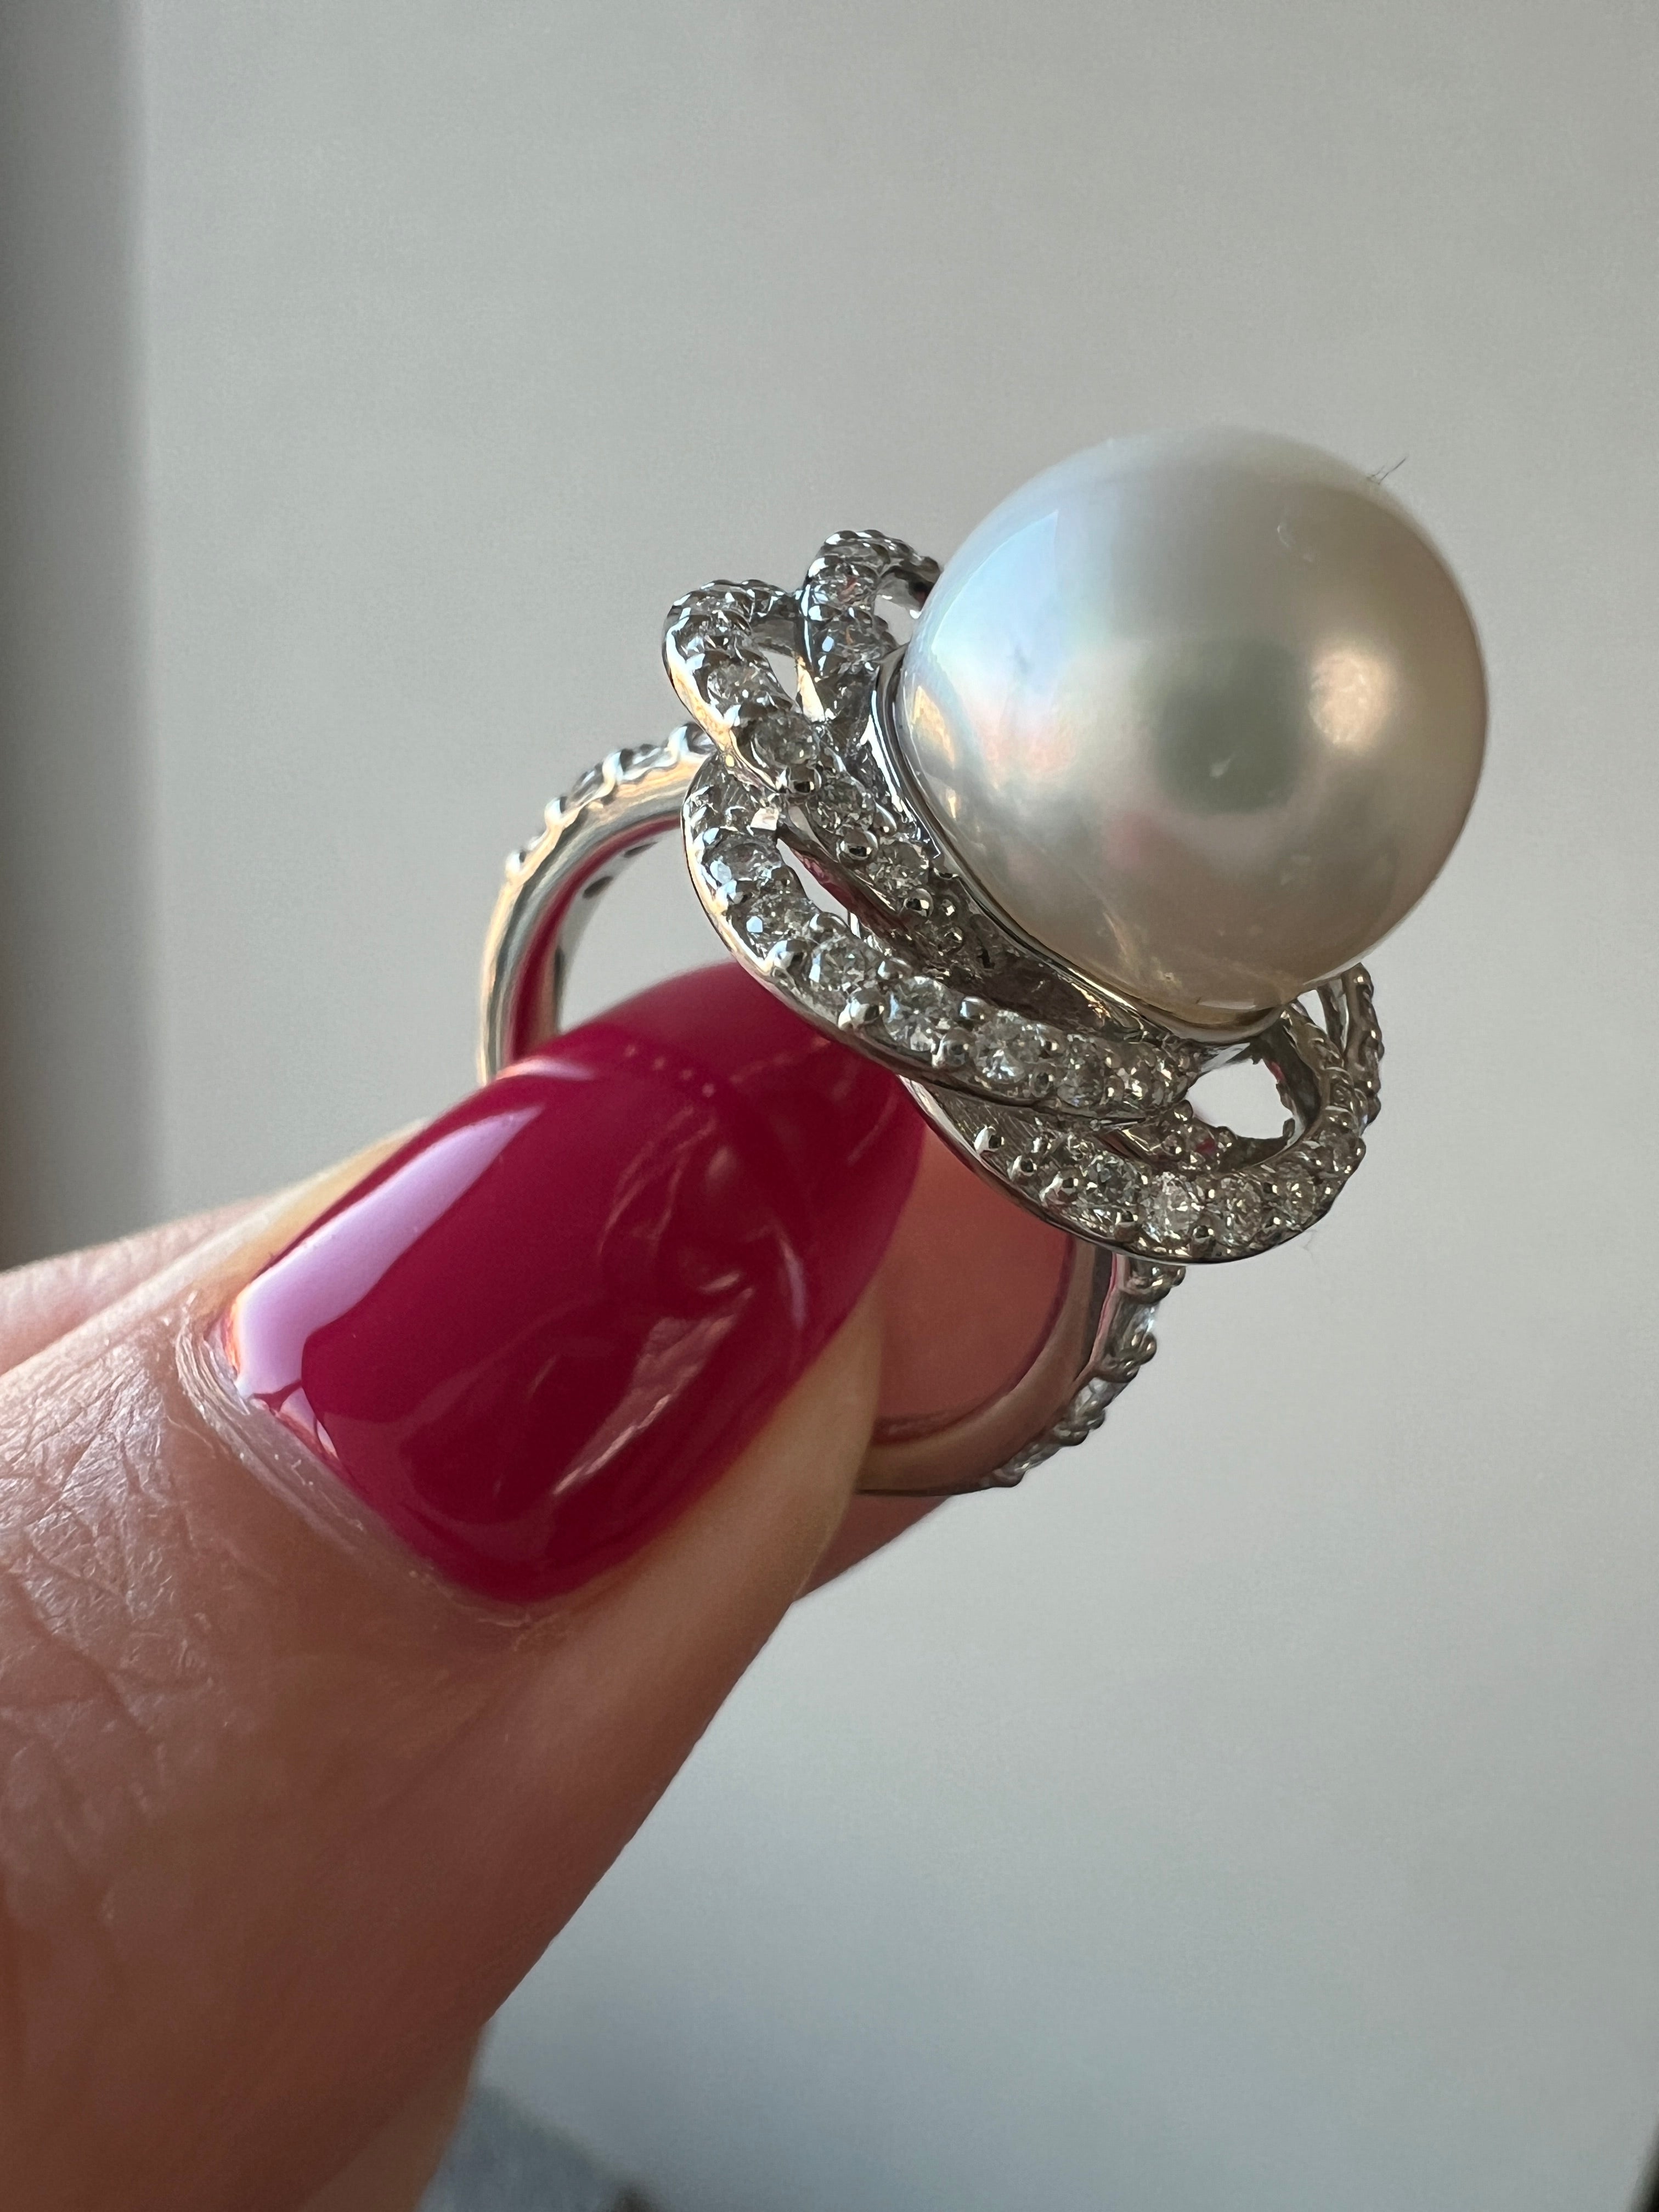 新作 白椿リング〜超希少 南洋真珠11mm こんなに美しいデザインがこの金額で手に入る事はあり得ません(15〜20珠限定 売れ行きで調整)